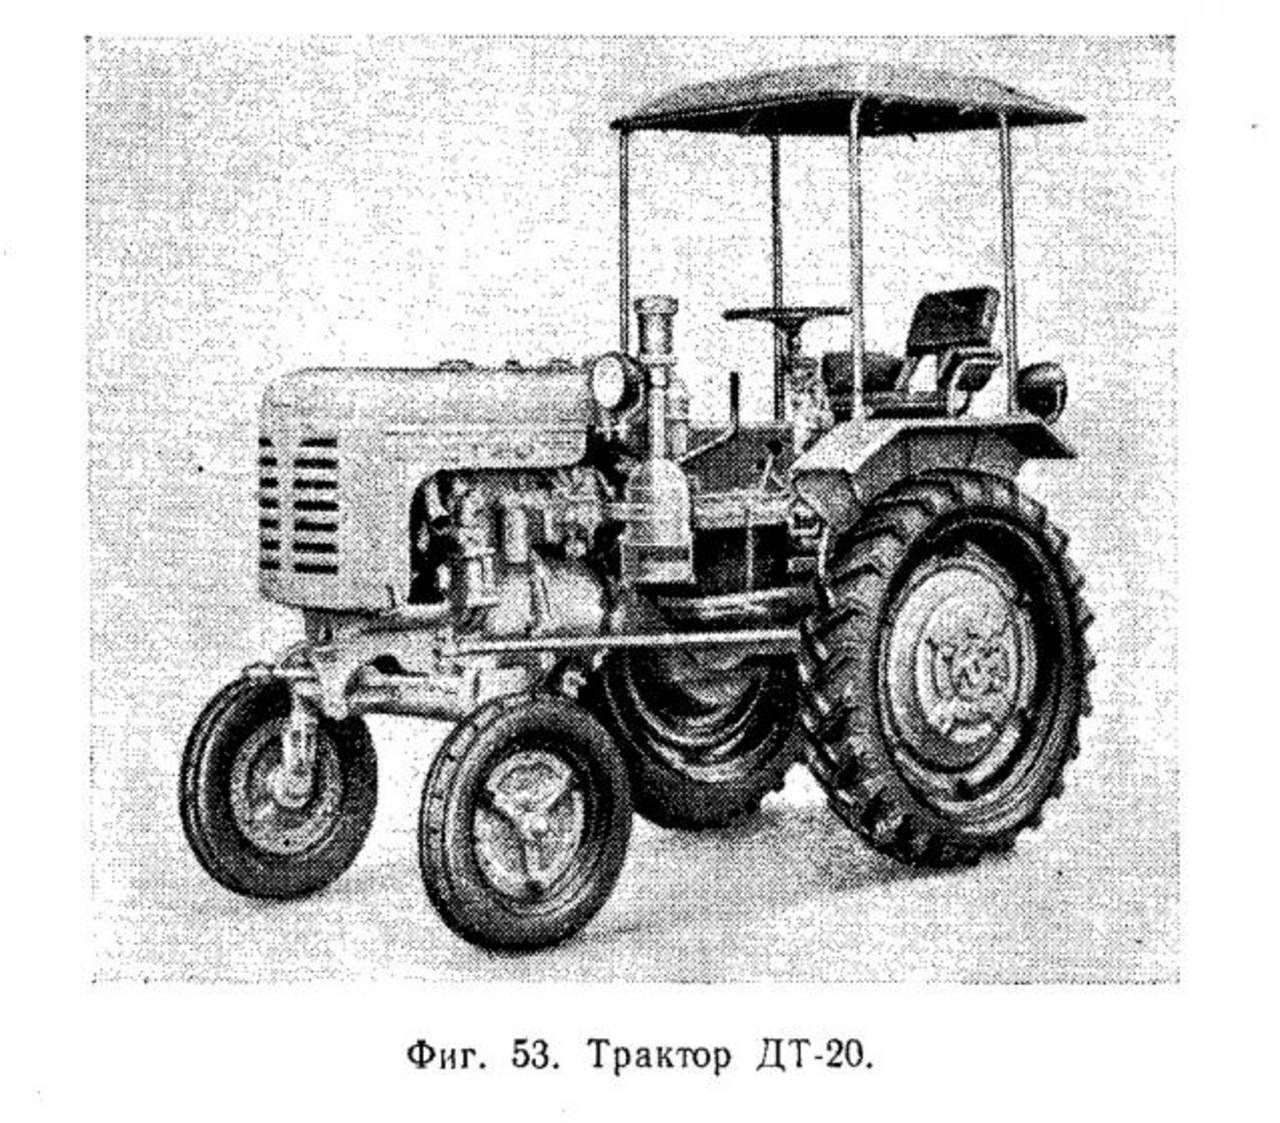 Трактор дт-20: технические характеристики, устройство, двигатель, коробка - все о тракторах